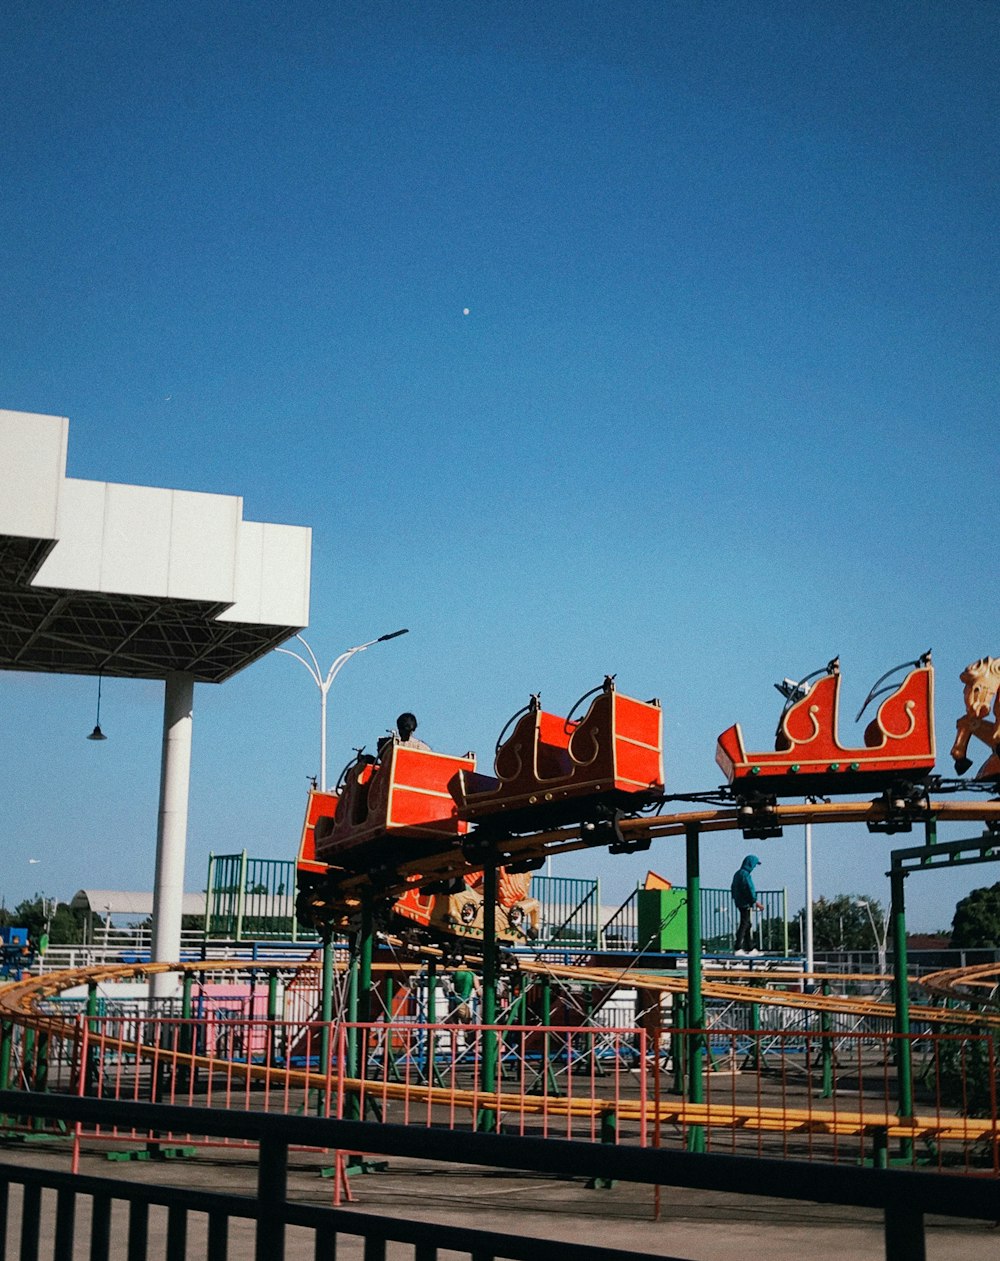 a roller coaster ride at an amusement park